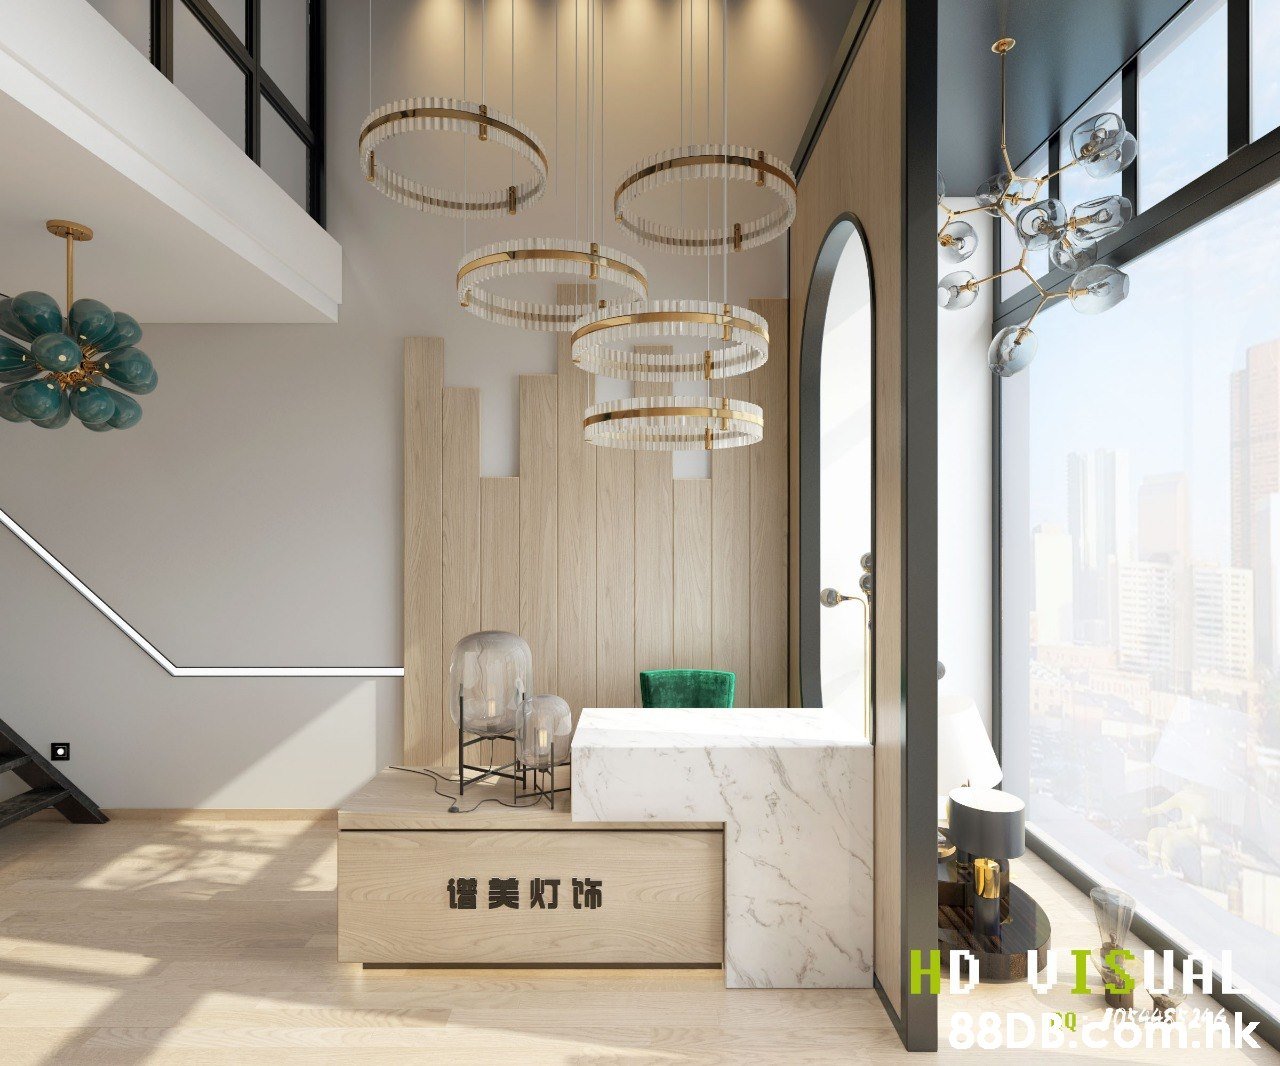 信美灯饰 HD UISUAL 88D Bcom.hk  Ceiling,Interior design,Room,Floor,Property